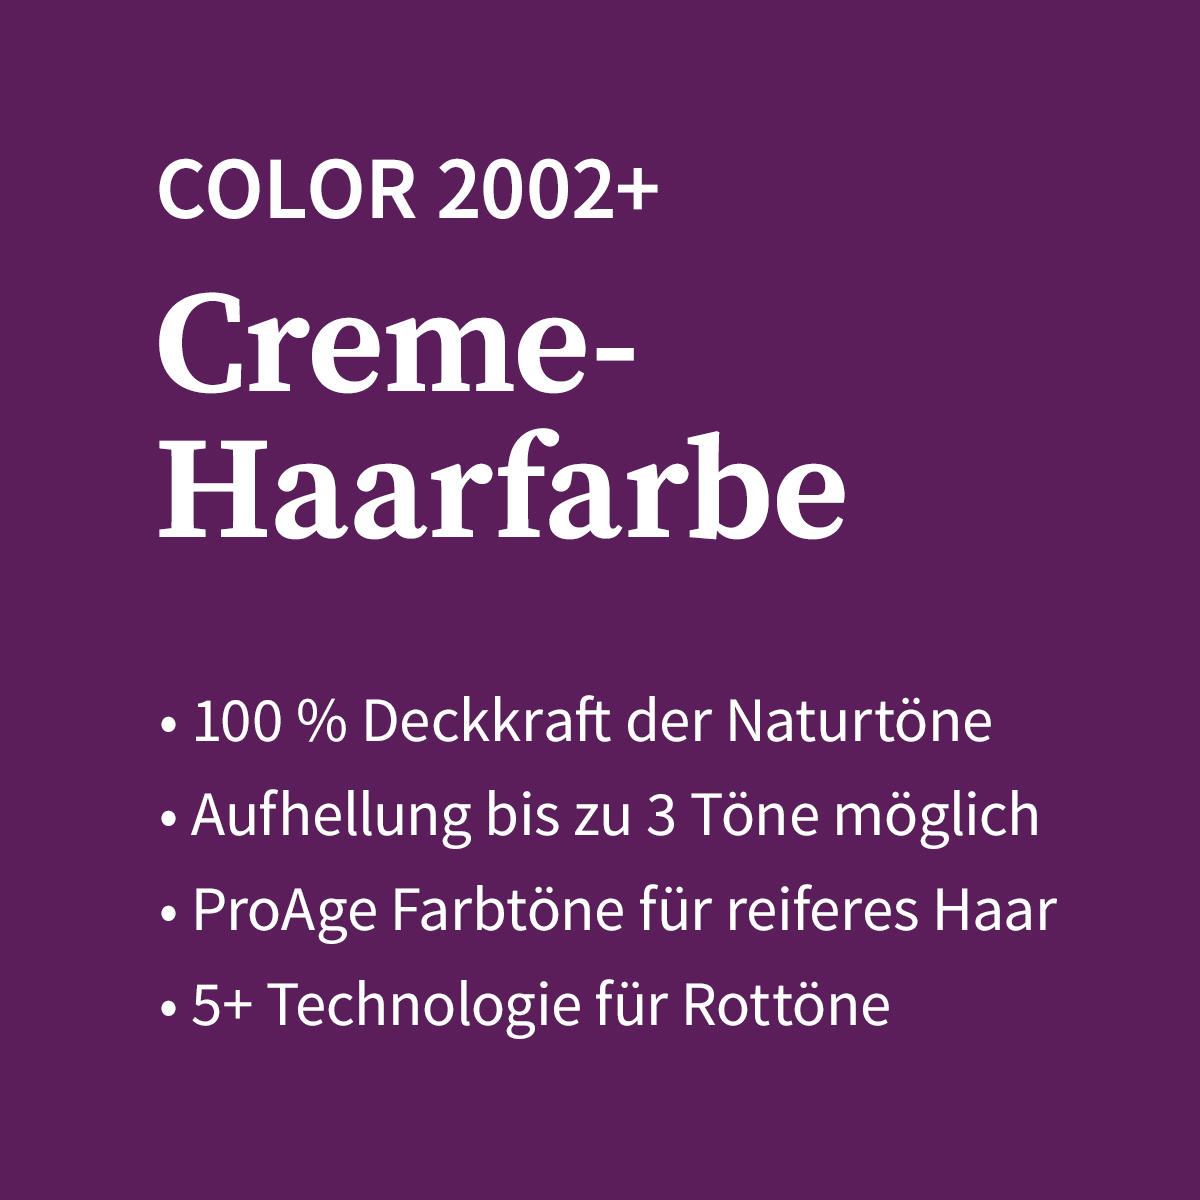 Basler Color 2002+ Cremehaarfarbe 10/1 lichtblond asch, Tube 60 ml - 4